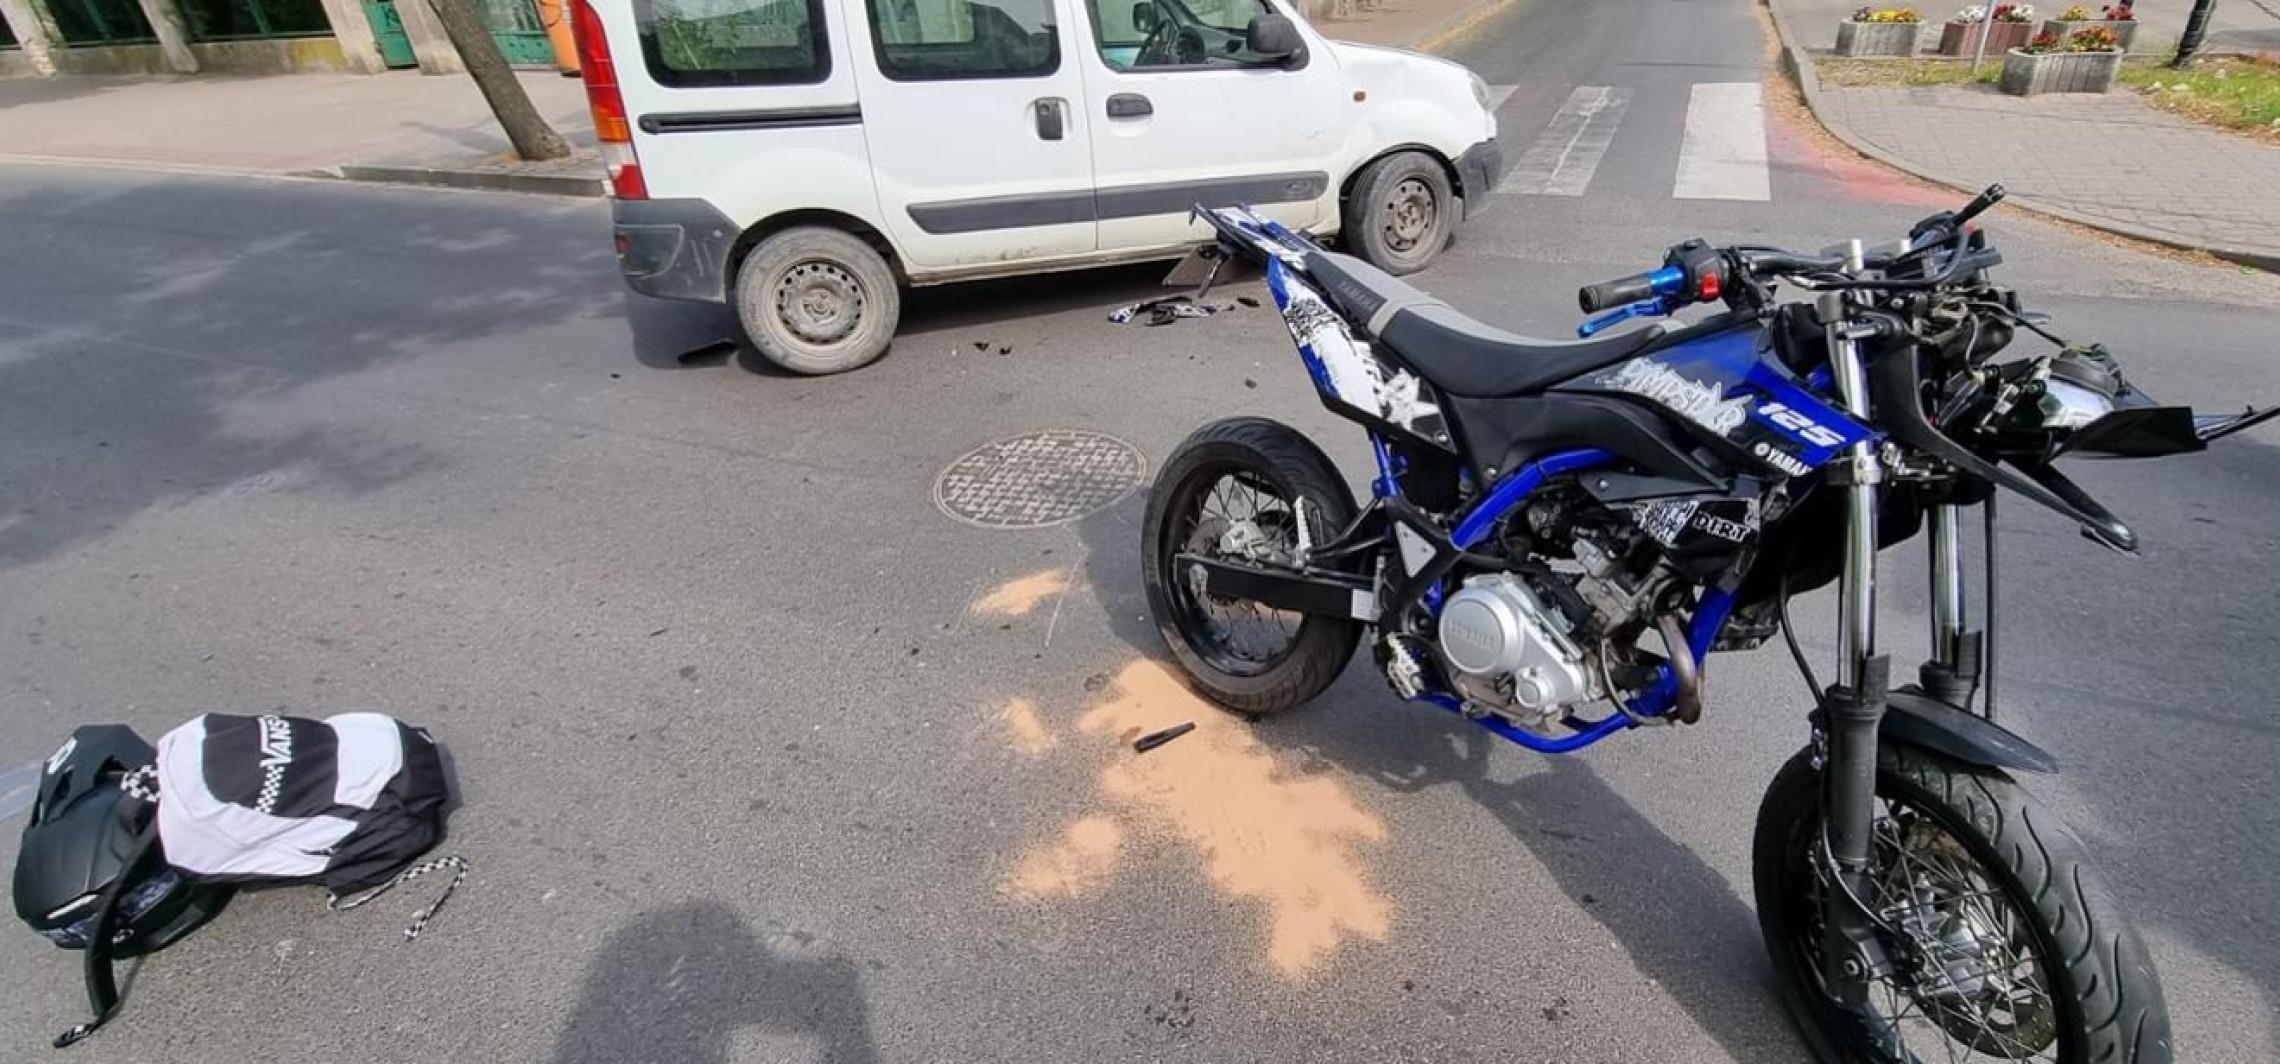 Mogilno - W Mogilnie samochód uderzył w motocyklistę